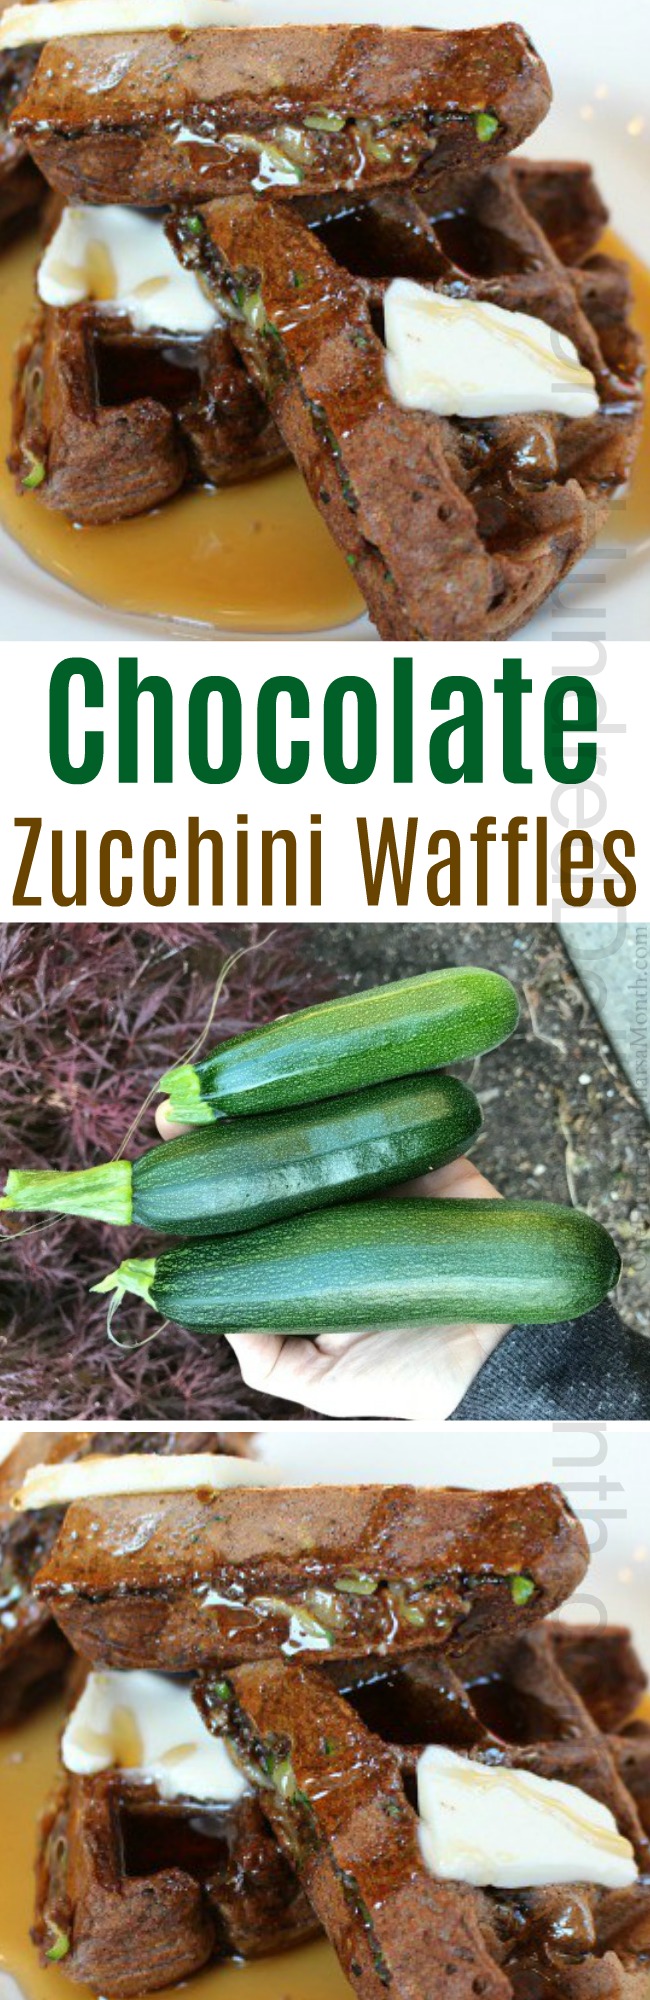 Chocolate Zucchini Waffles